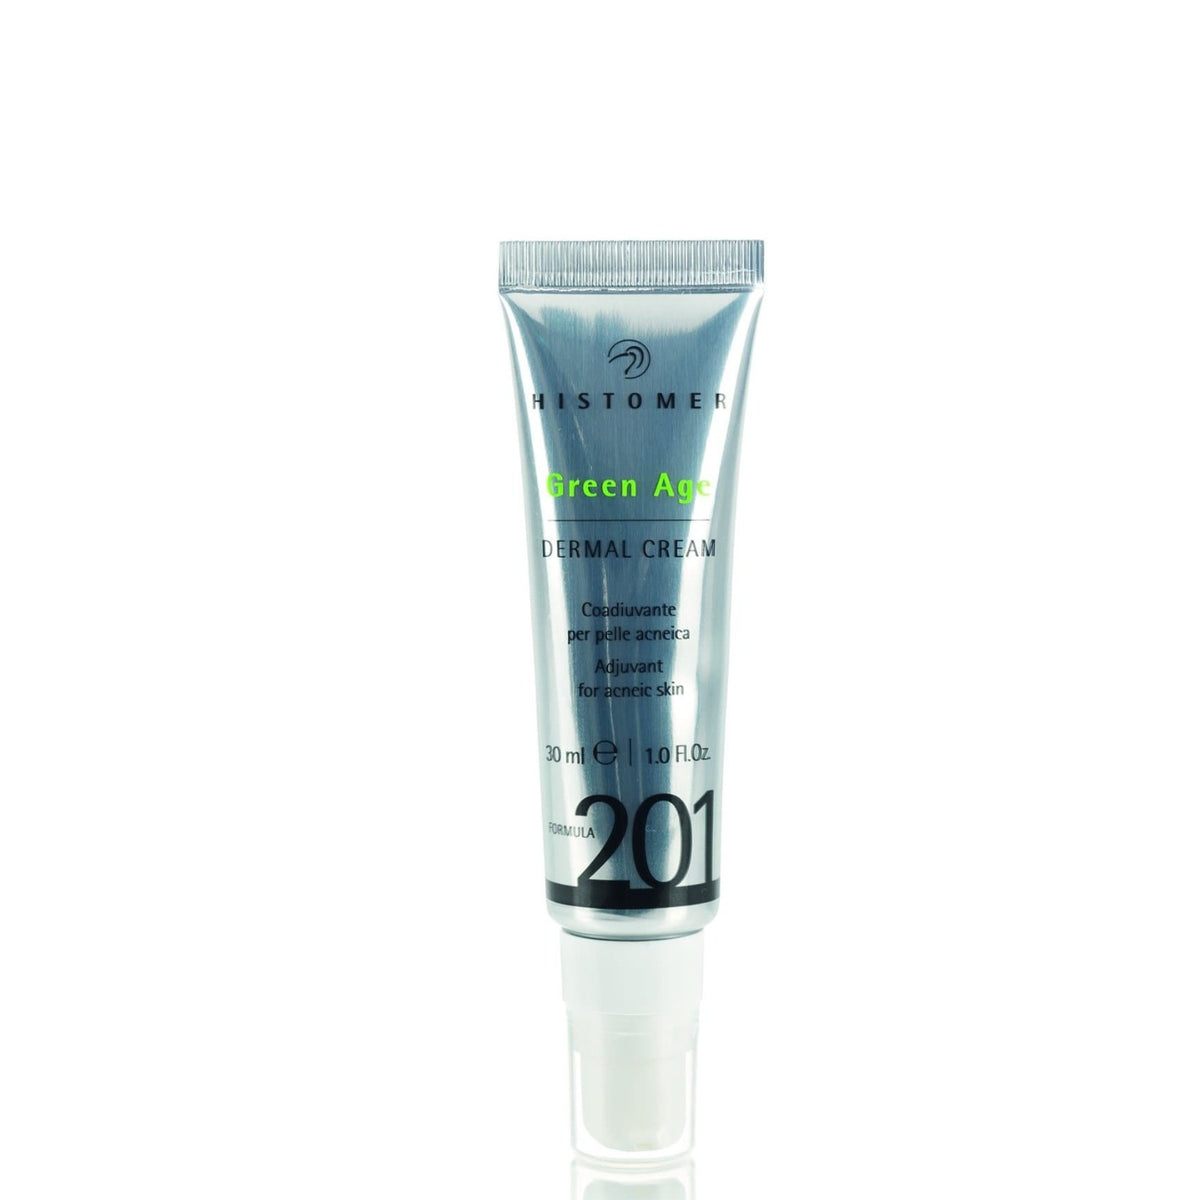 Histomer F201 Green Age Dermal Cream - E11 Store